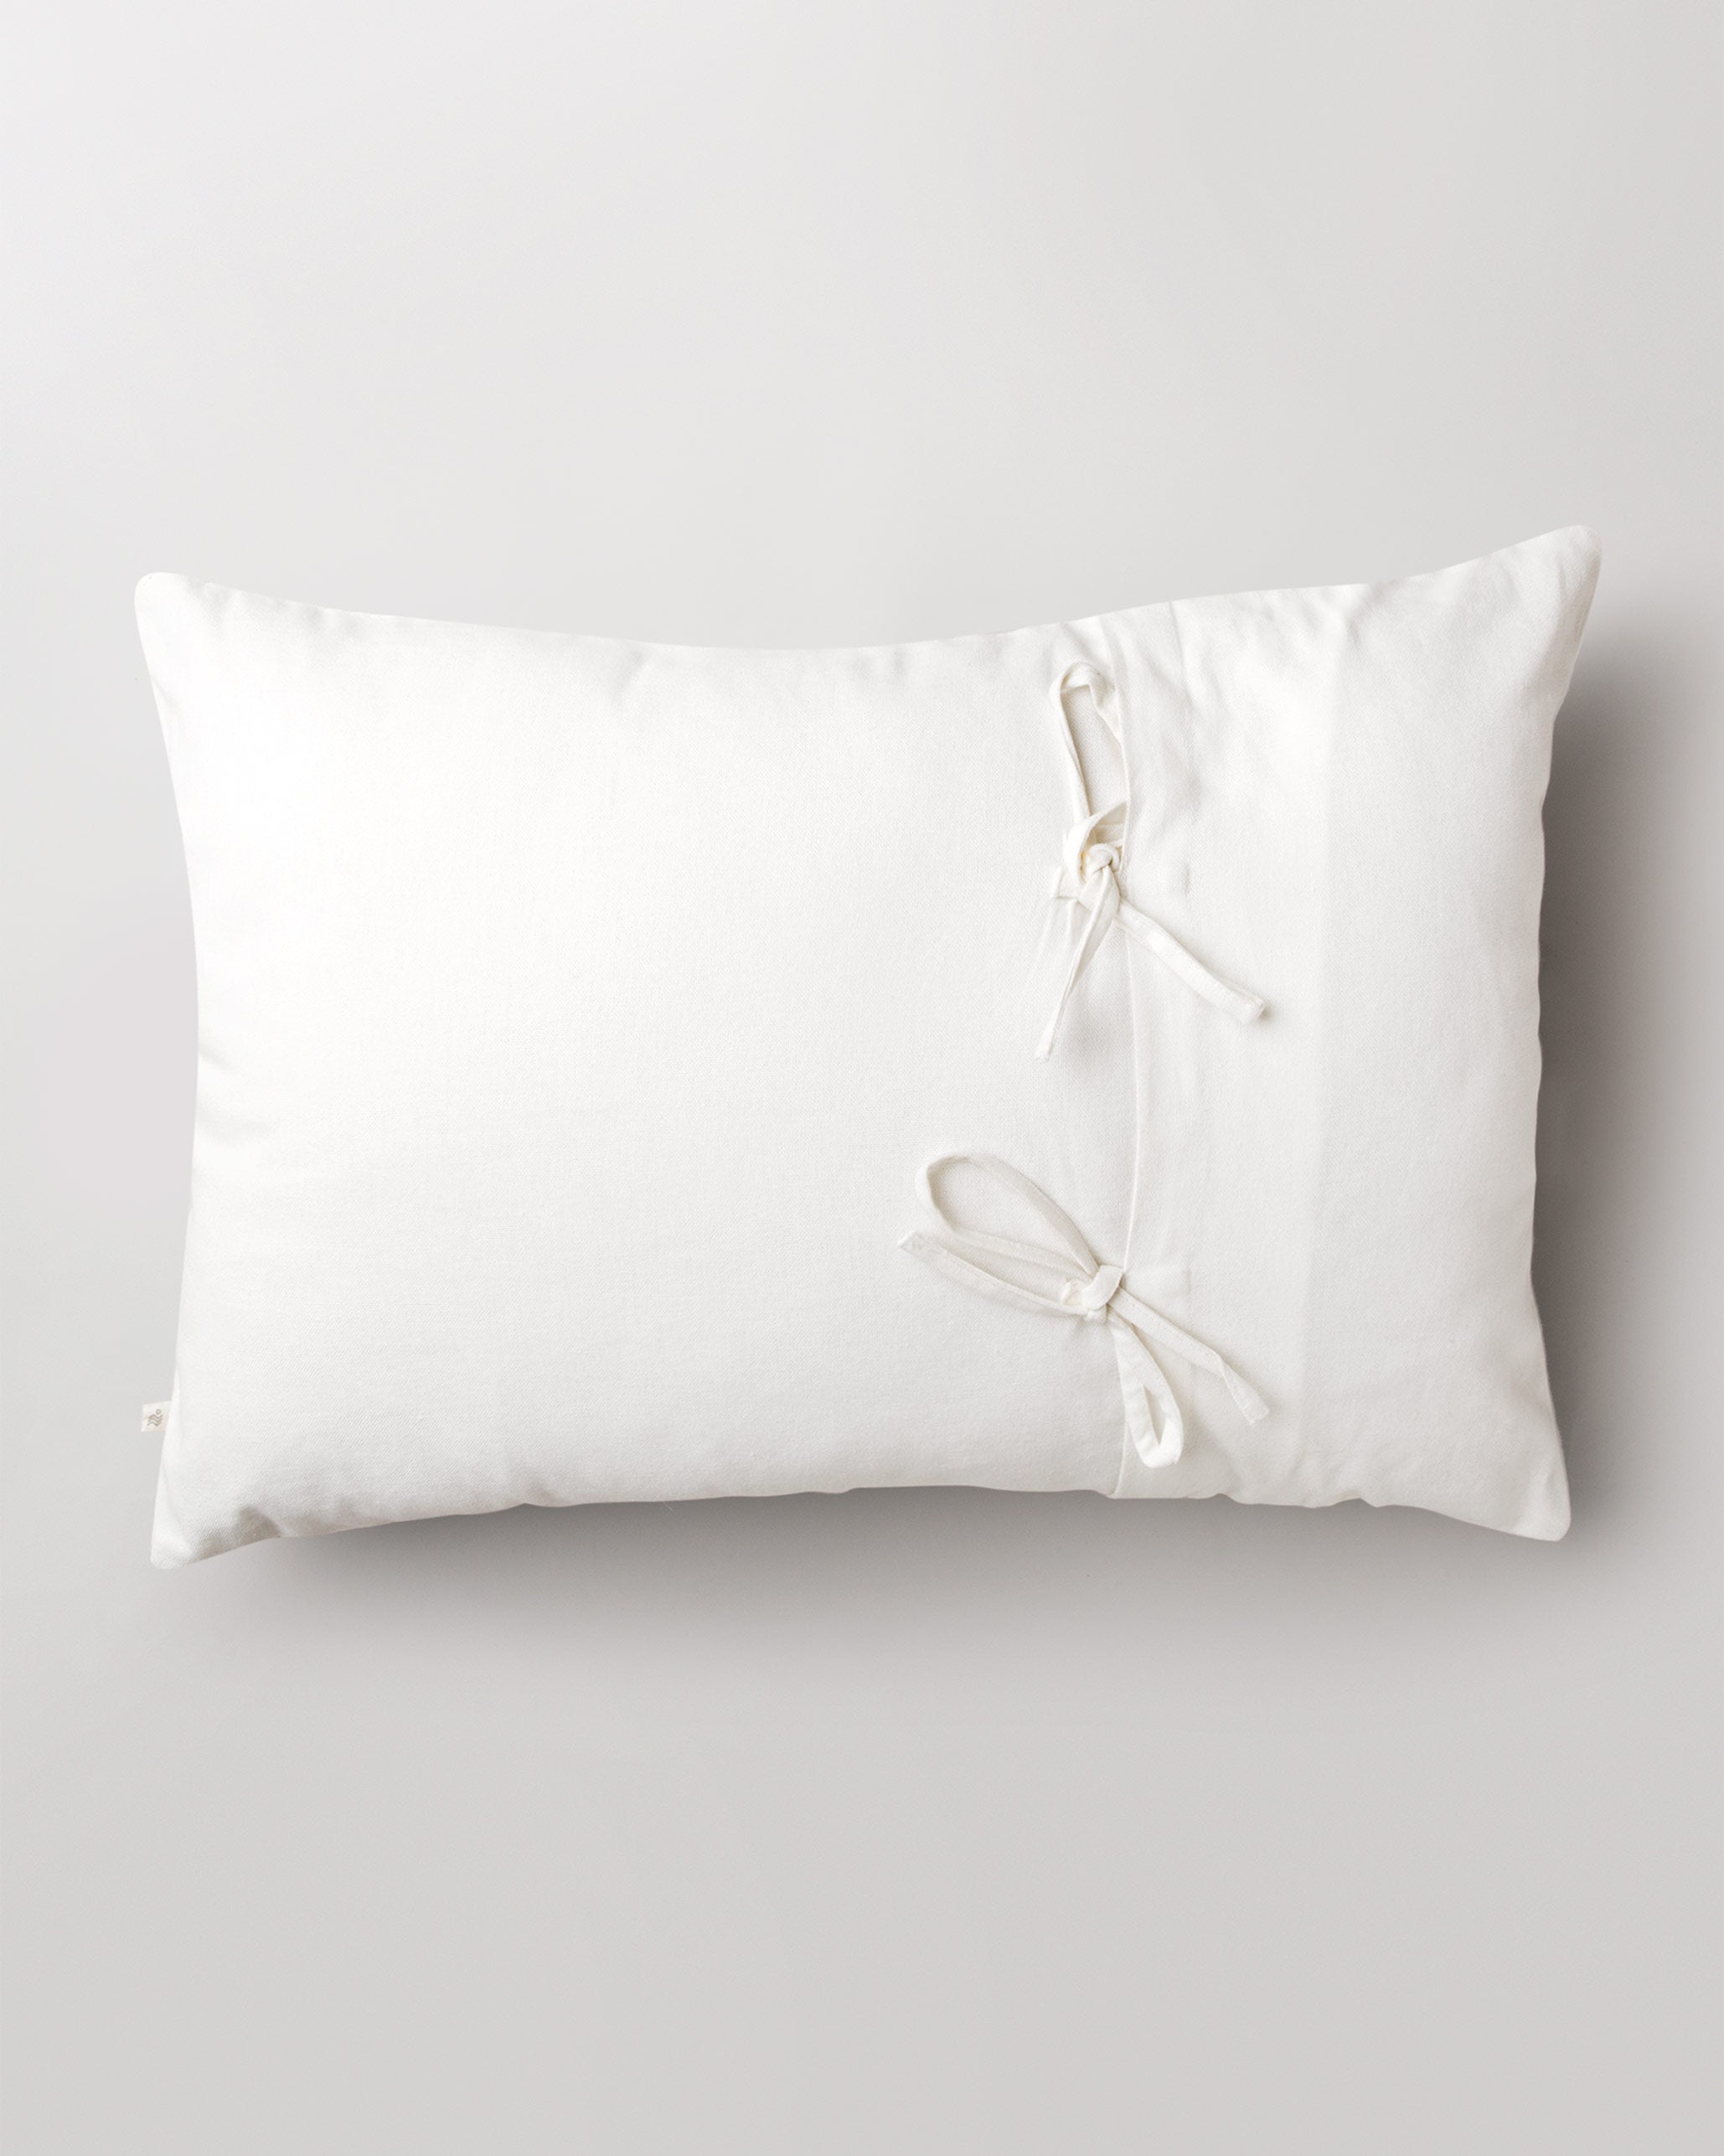 Oolong Lumbar Pillow Cover - Multi